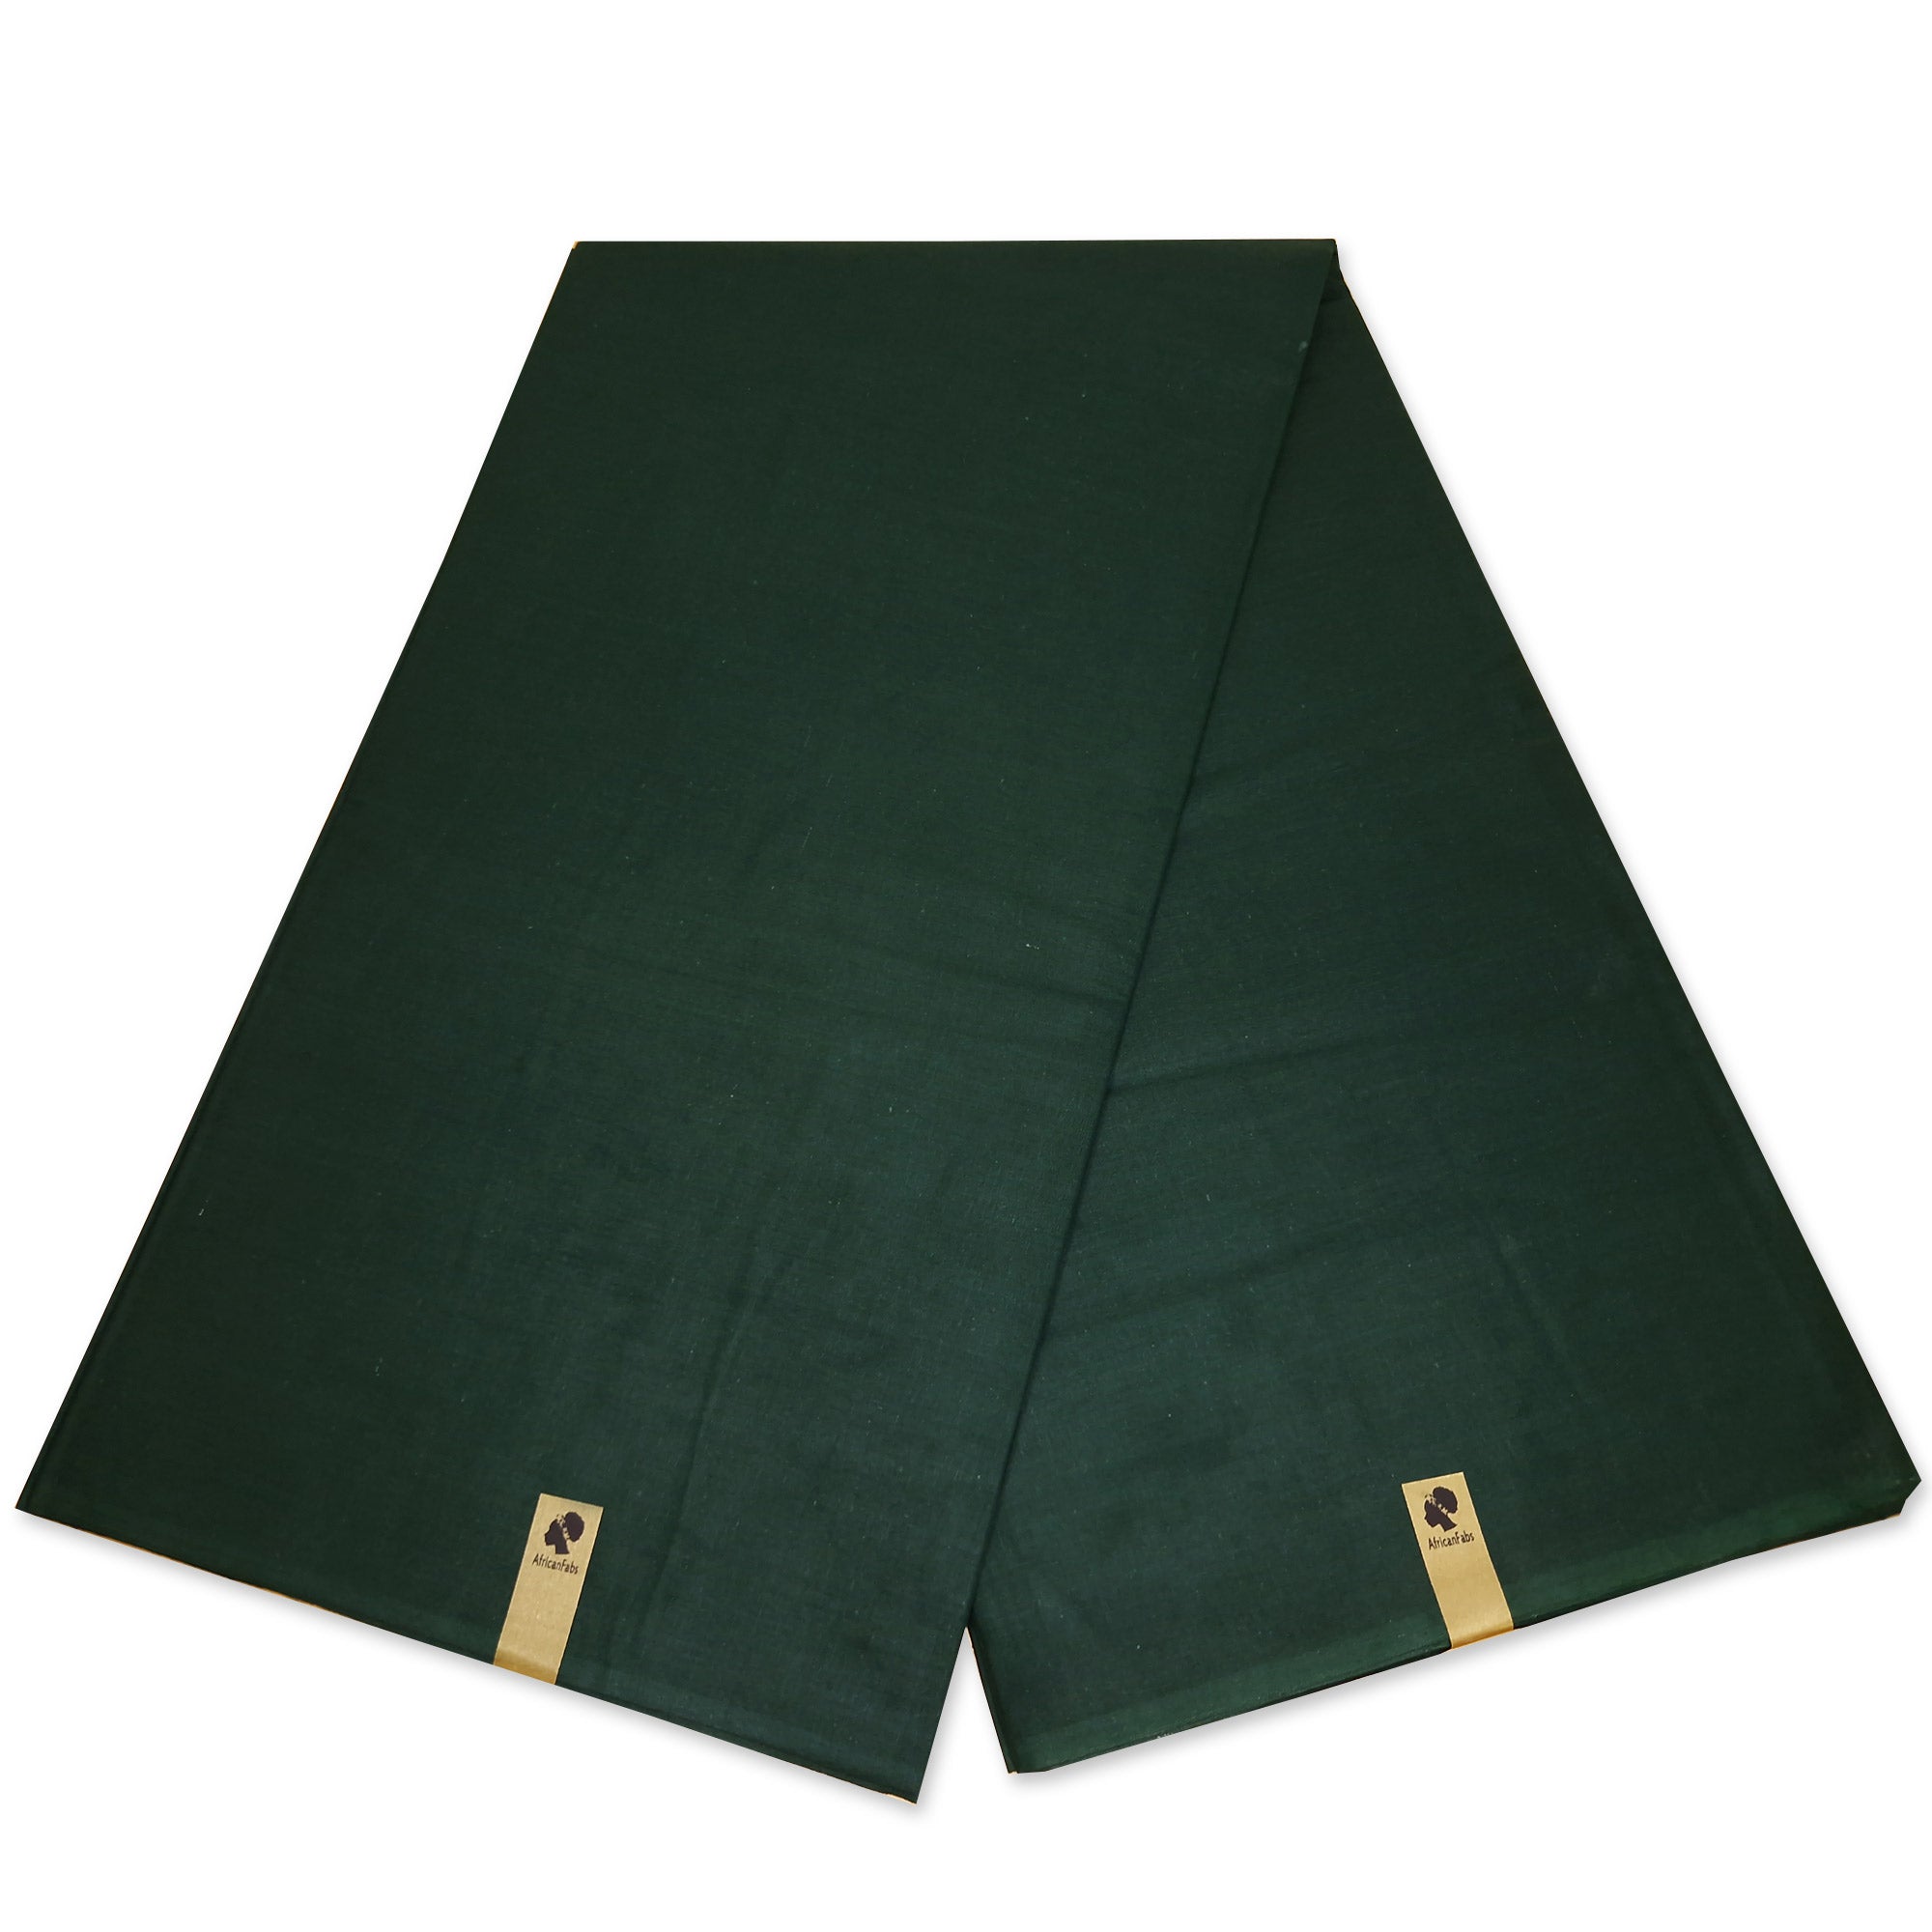 Tissu uni vert foncé - Couleur unie vert foncé - 100% coton